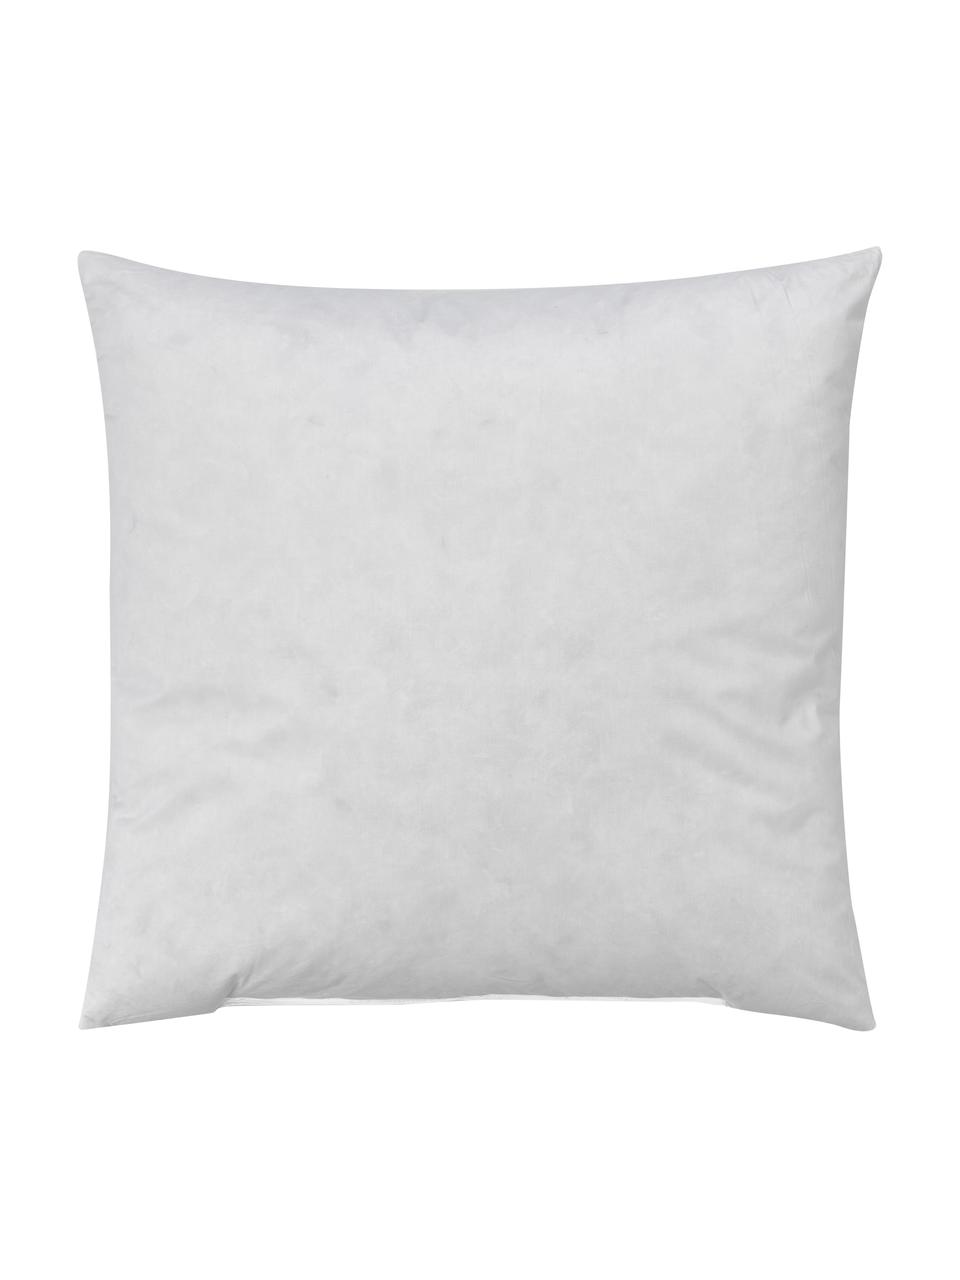 Wkład do poduszki dekoracyjnej Premium, Biały, S 60 x D 60 cm